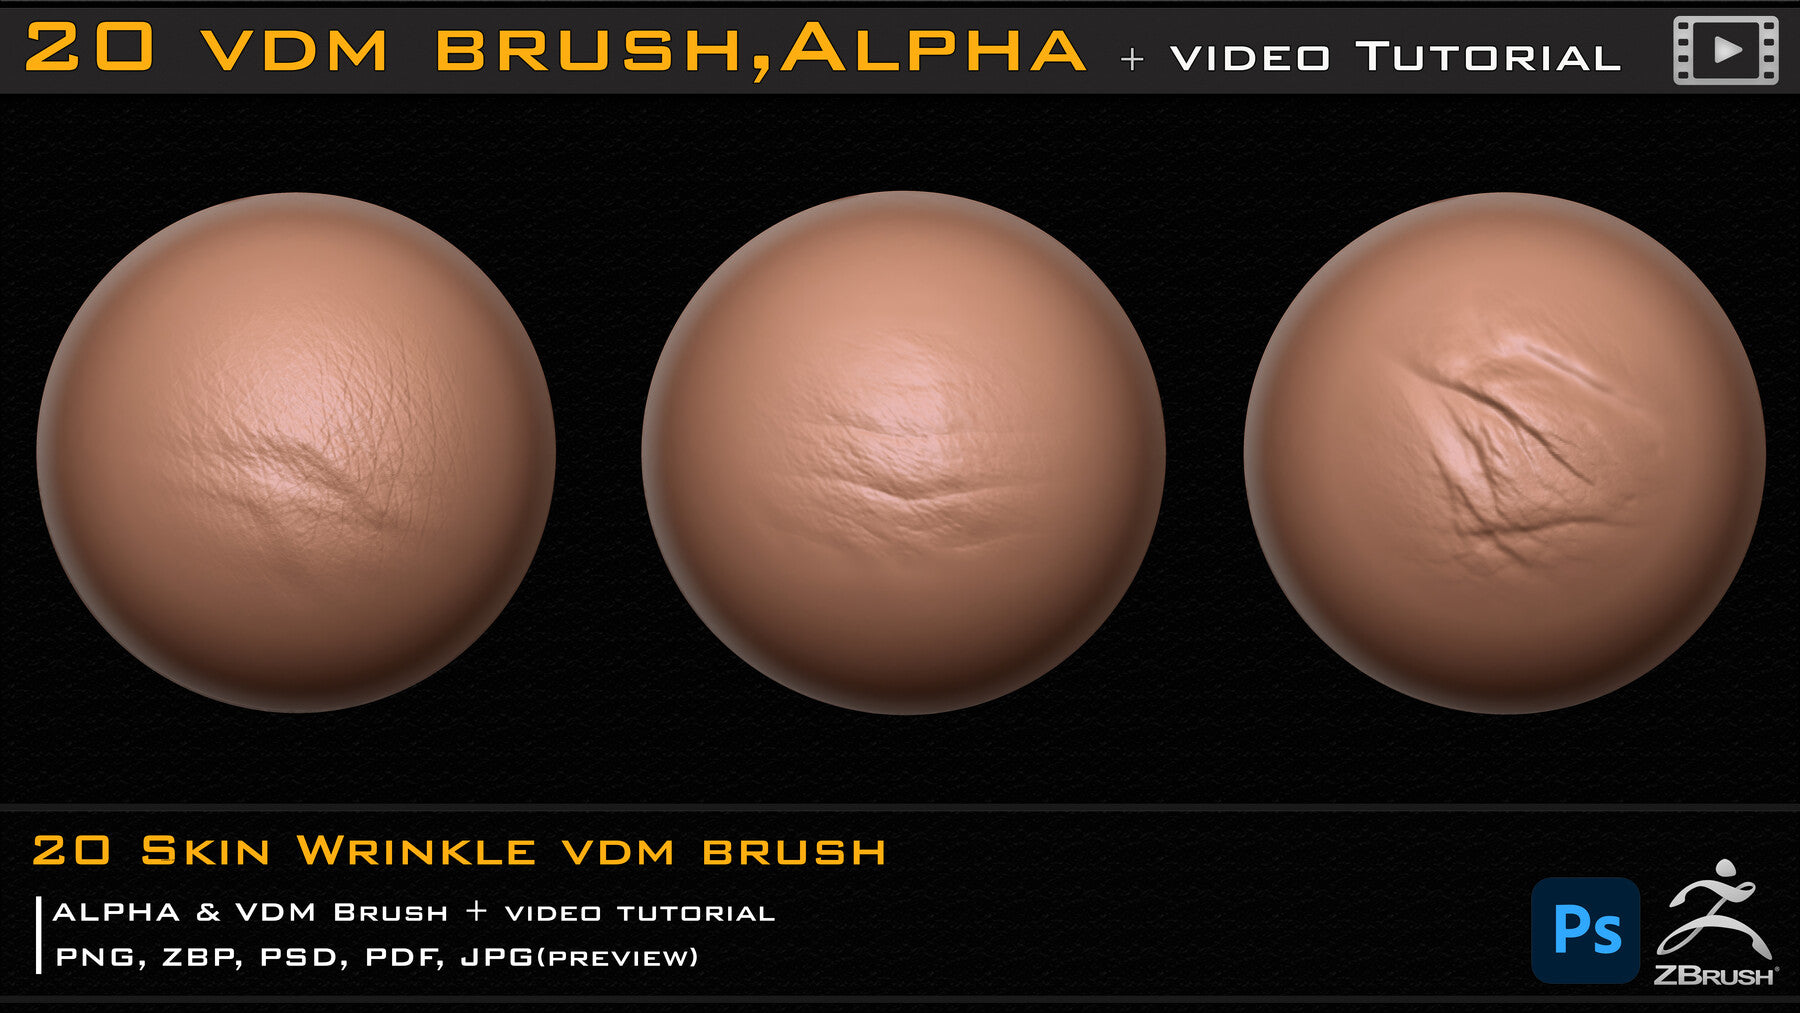 20 Skin Wrinkle VDM Brush & Alpha + Video Tutorial